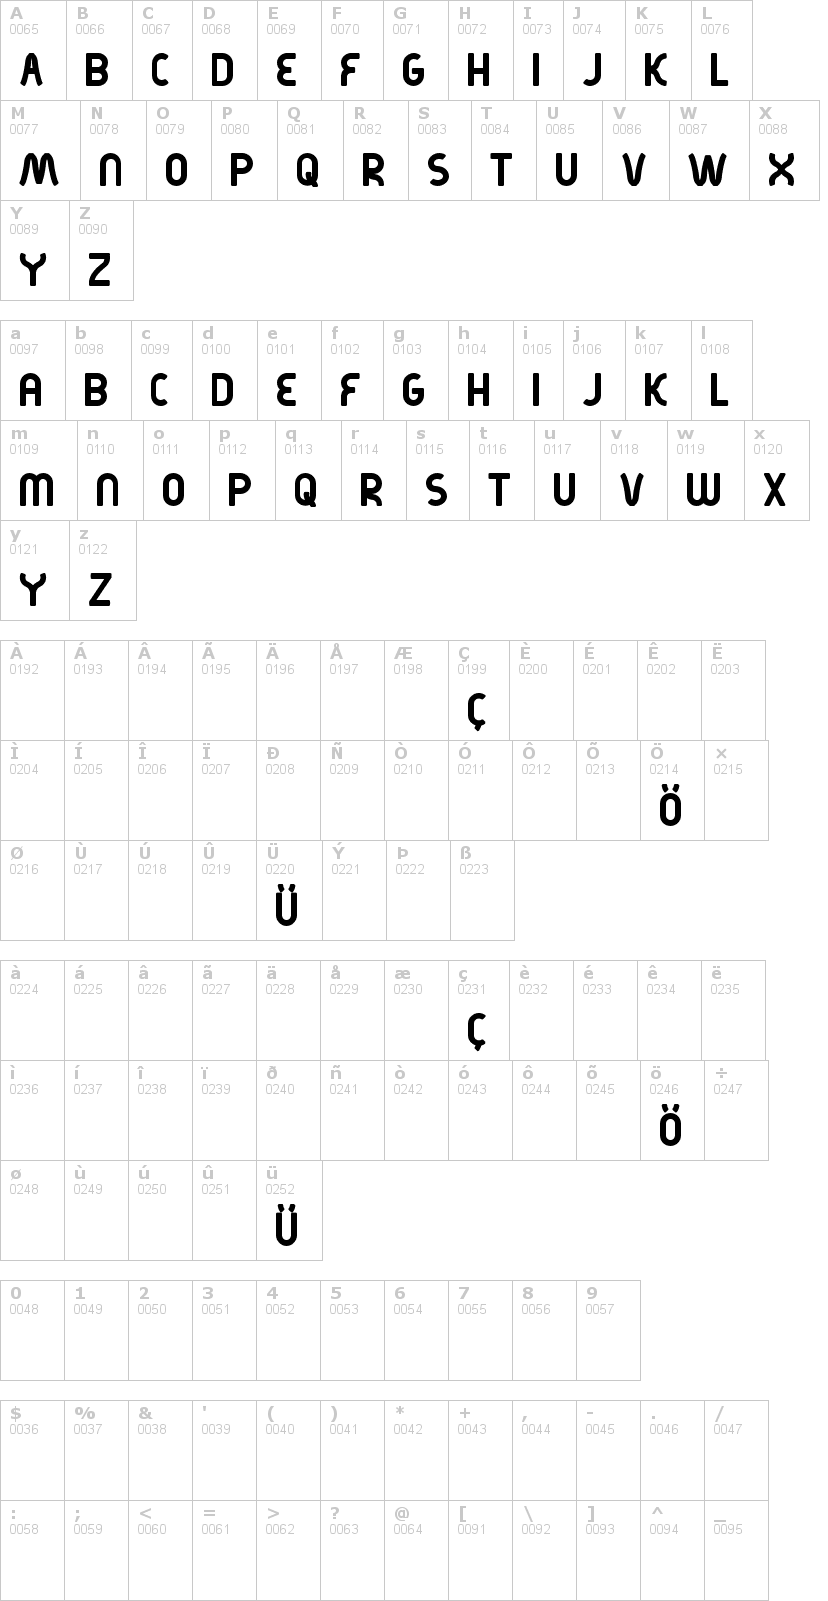 Lettere dell'alfabeto del font kirschbaum con le quali è possibile realizzare adesivi prespaziati